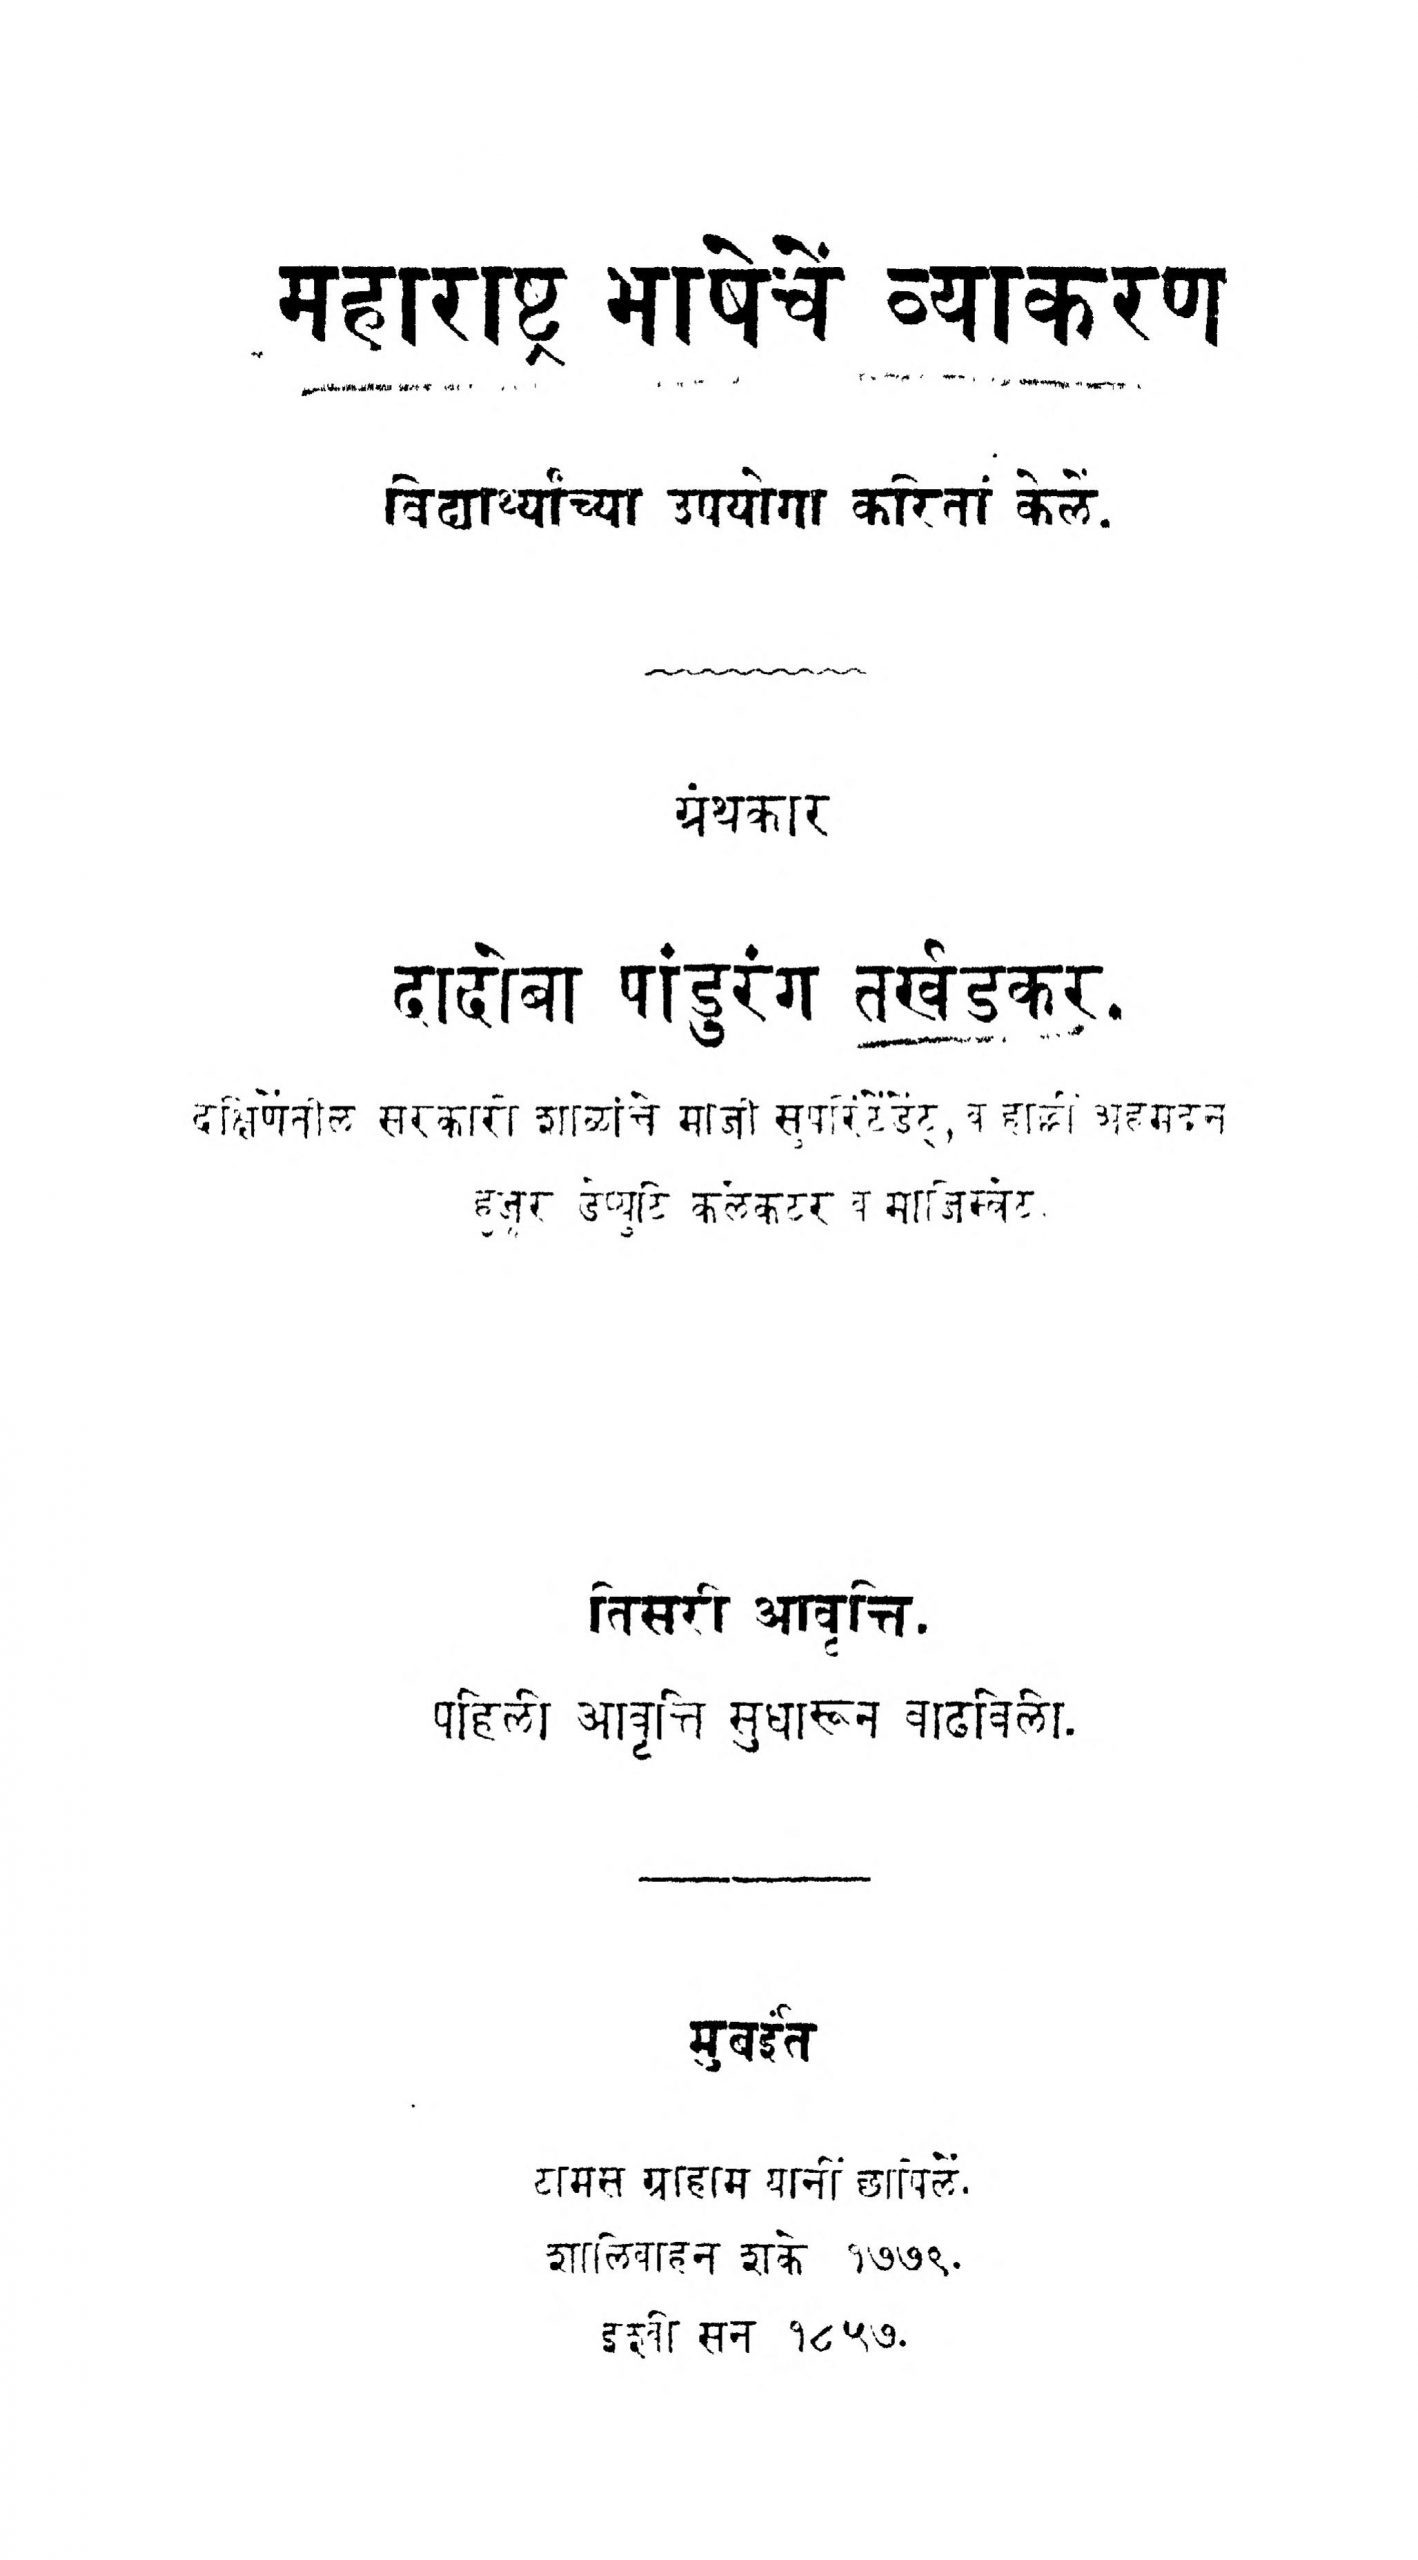 mahaaraashhtra-bhaashhechen-vyaakaran-by-dadoba-pandurang-tarkhadakar-scaled-2